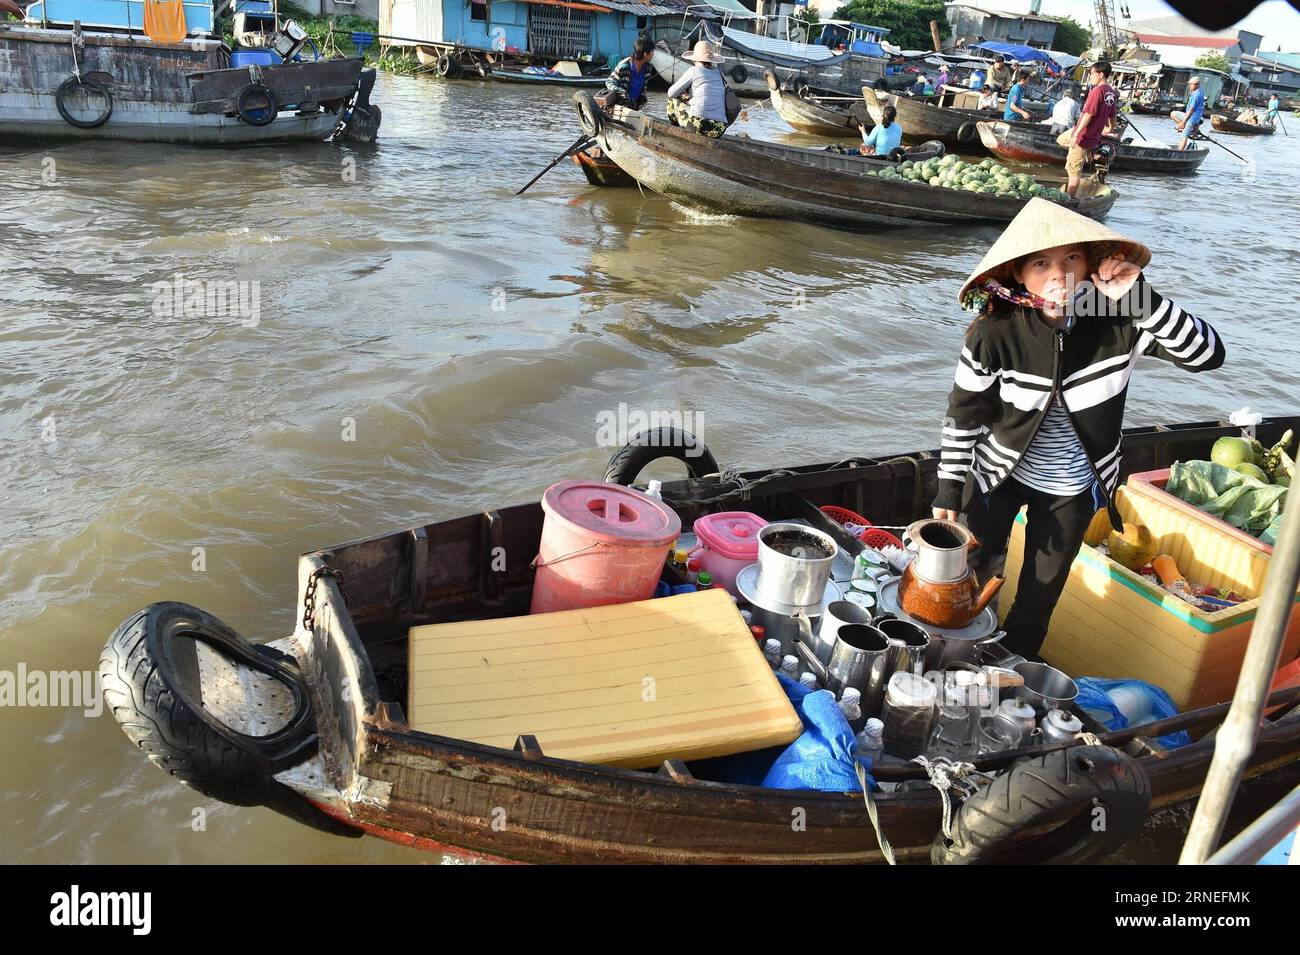 (160621) -- CAN THO, 21 juin 2016 -- Un vendeur vietnamien vend du café dans le plus grand marché flottant de CAN Tho, Cai rang, Vietnam, 21 juin 2016. CAN Tho, à environ 170 km de Ho Chin Minh-ville dans le delta du Mékong, est célèbre pour ses marchés flottants où les gens peuvent acheter des fruits, des produits agricoles et des collations.) VIETNAM-CAN THO-MARCHÉ FLOTTANT LexYanna PUBLICATIONxNOTxINxCHN 160621 CAN Tho juin 21 2016 un vendeur vietnamien vend du café à CAN Tho S le plus grand marché flottant Cai Rank Vietnam juin 21 2016 CAN Tho environ 170 km de Ho Chin Minh ville dans le delta du Mékong EST célèbre pour son Ma flottant Banque D'Images